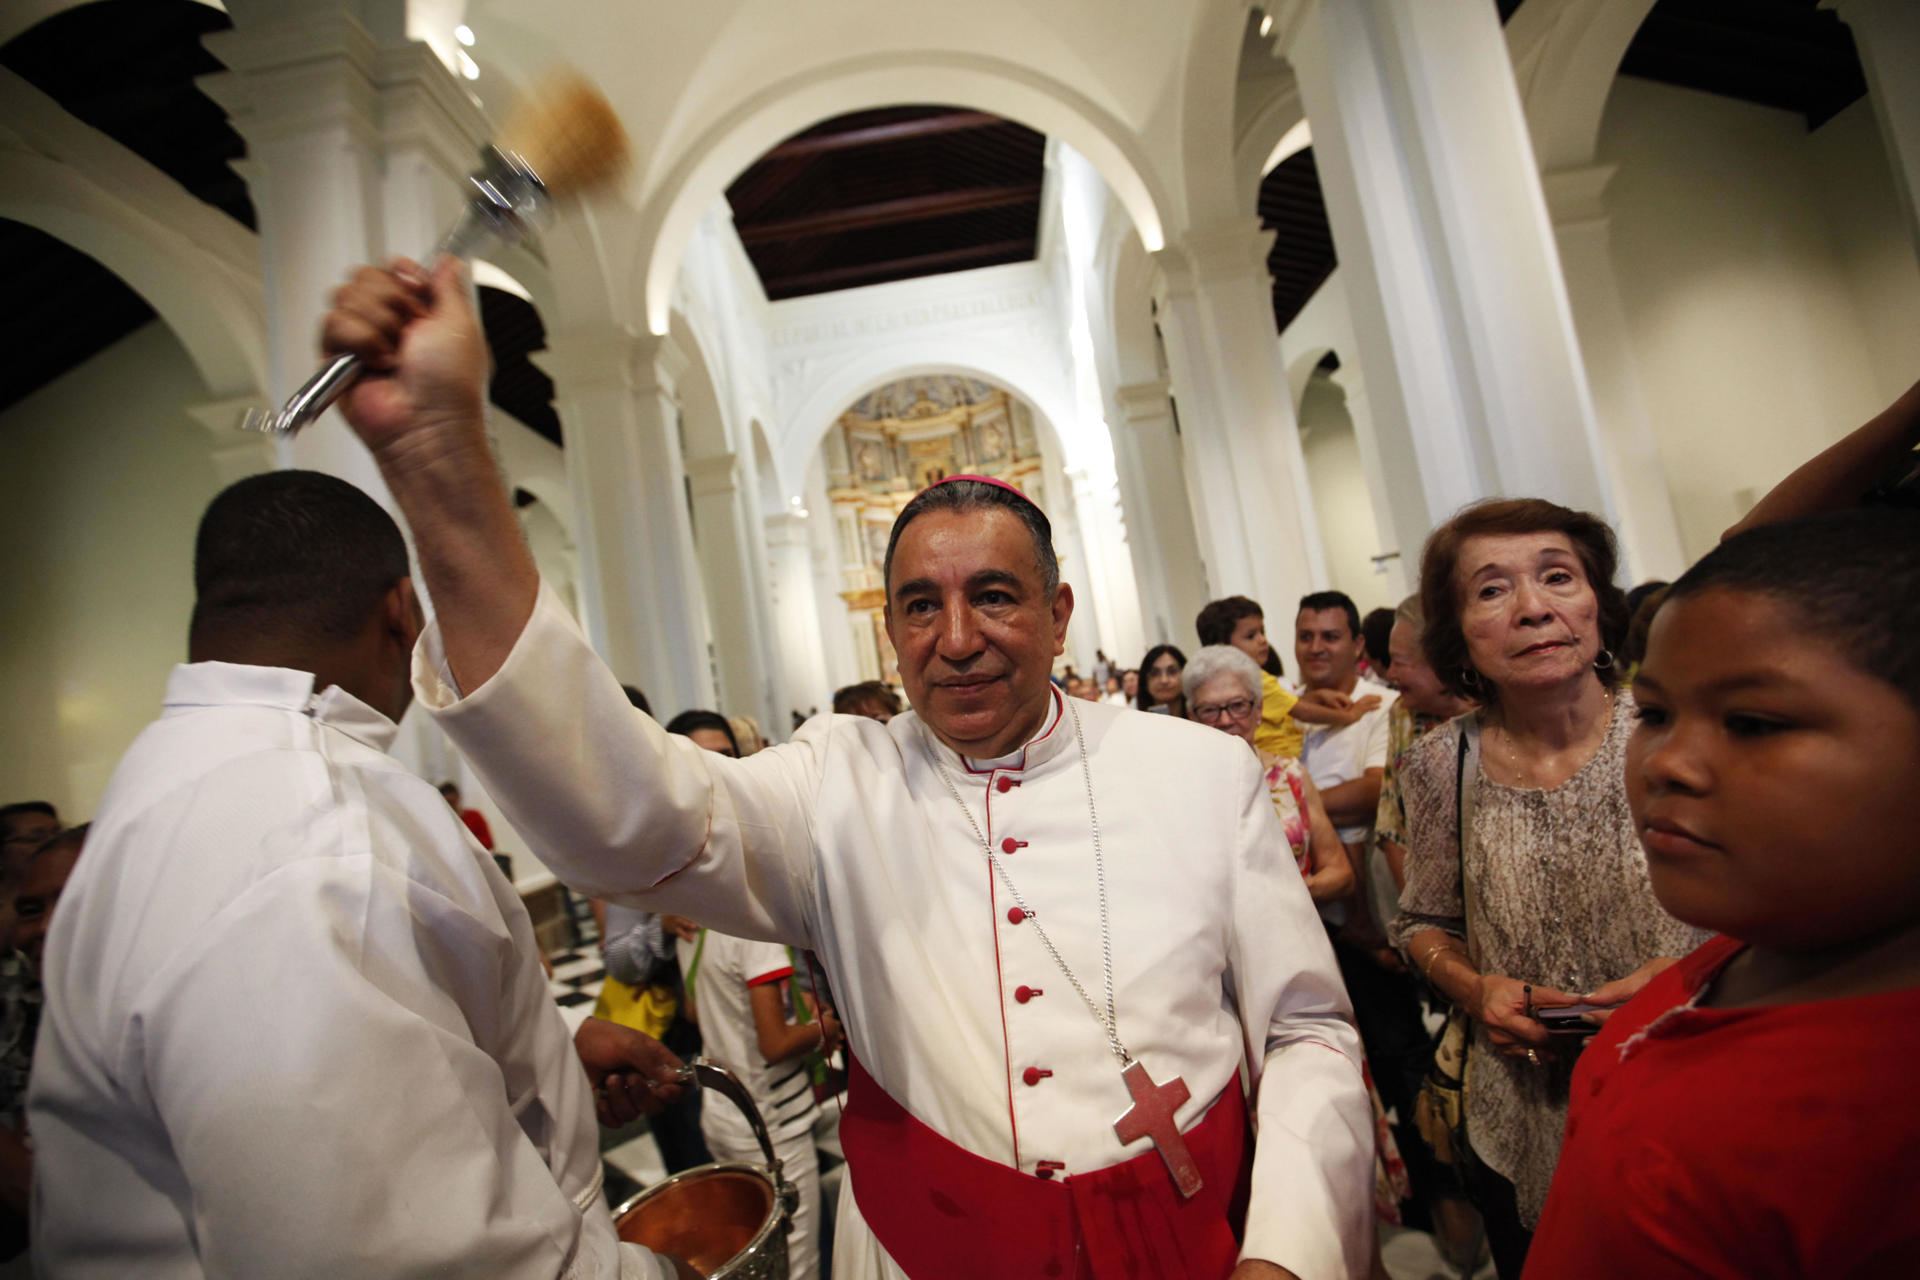 Arzobispo afirmó que Panamá "merece vivir una democracia más auténtica"